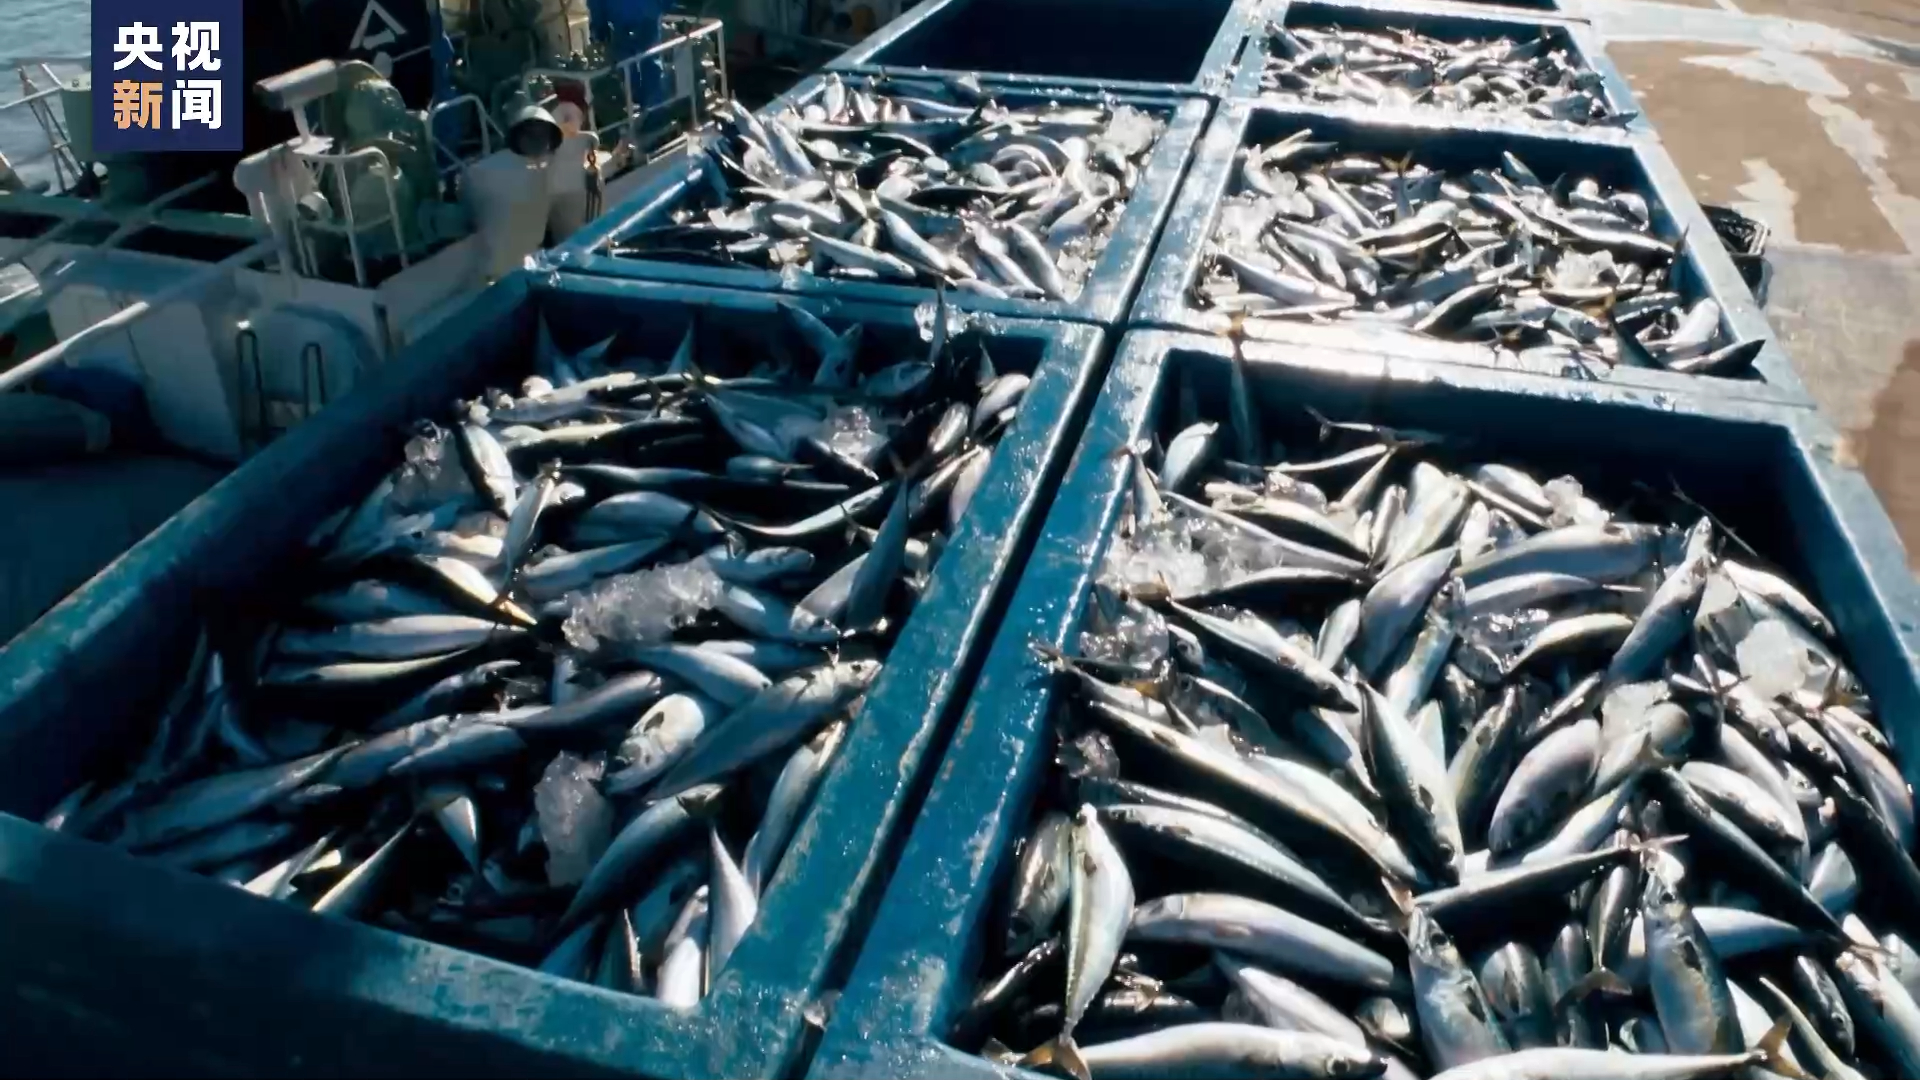 日本一意孤行强推核污染水排海福岛渔业从业者愤慨之外空余无奈